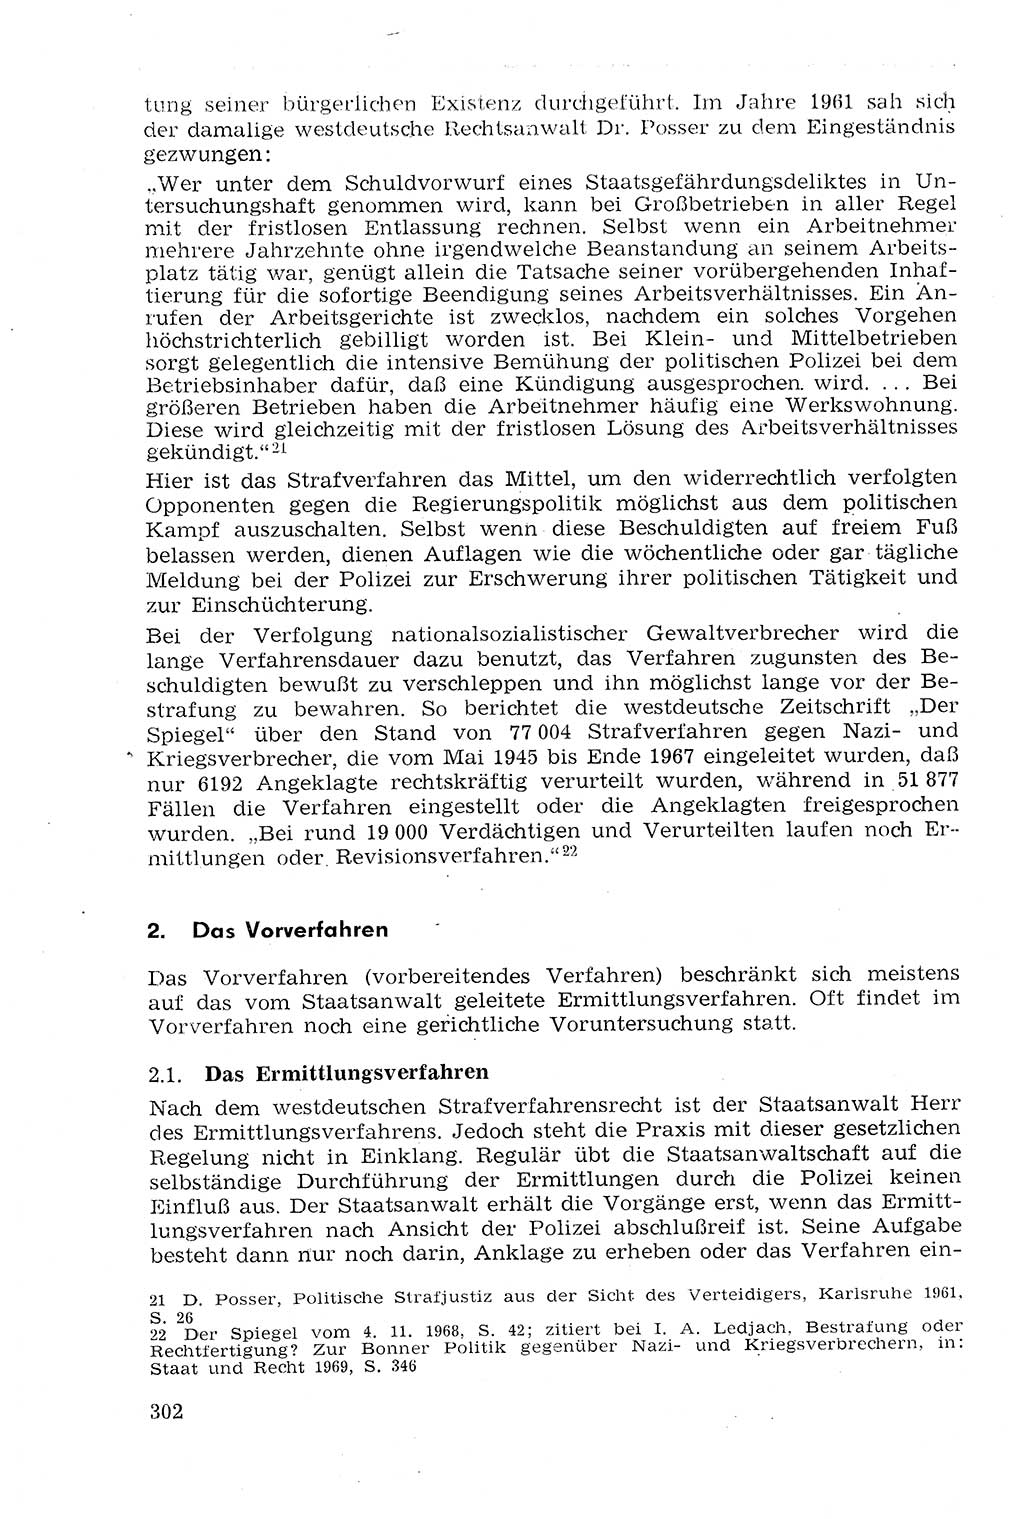 Strafprozeßrecht der DDR (Deutsche Demokratische Republik), Lehrmaterial 1969, Seite 302 (Strafprozeßr. DDR Lehrmat. 1969, S. 302)